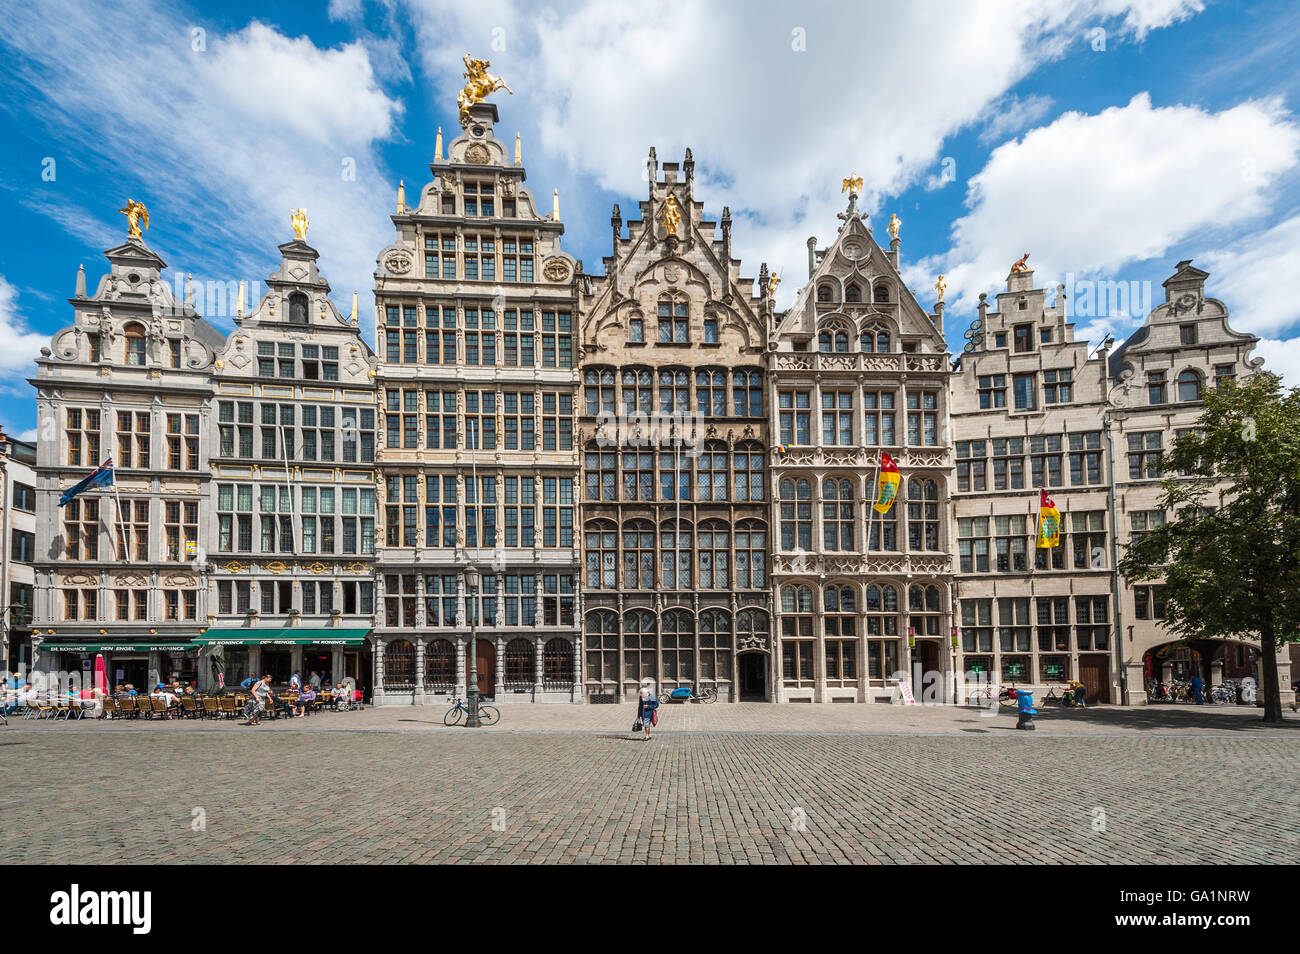 Antwerpen, Netherlands - July 7, 2011: View of the Grote Markt of Antwerpen. Stock Photo